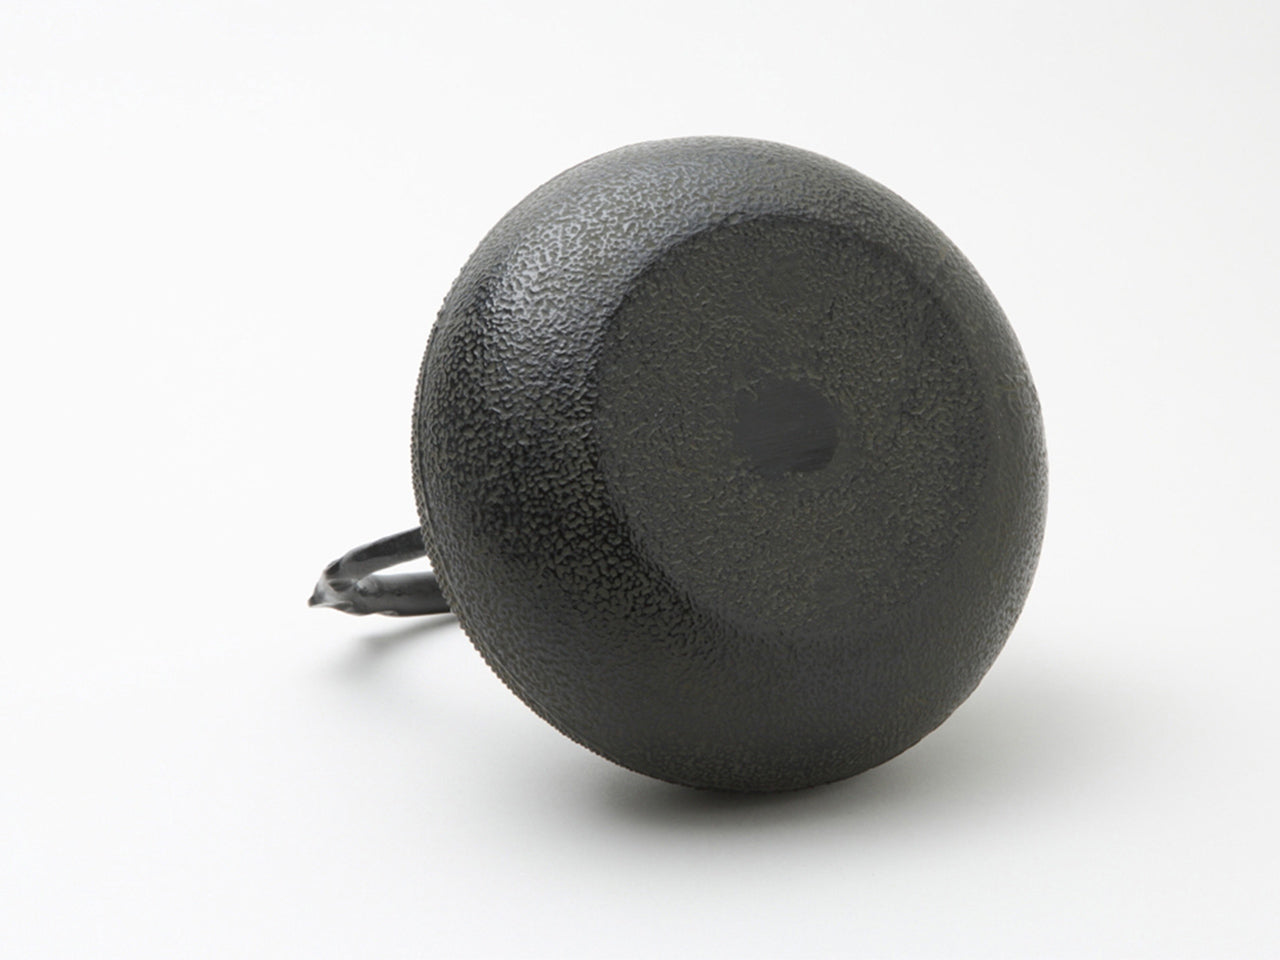 茶具 铁壶 宝珠霰 黑色 1.6L 及川喜德 南部铁器 金属工艺品